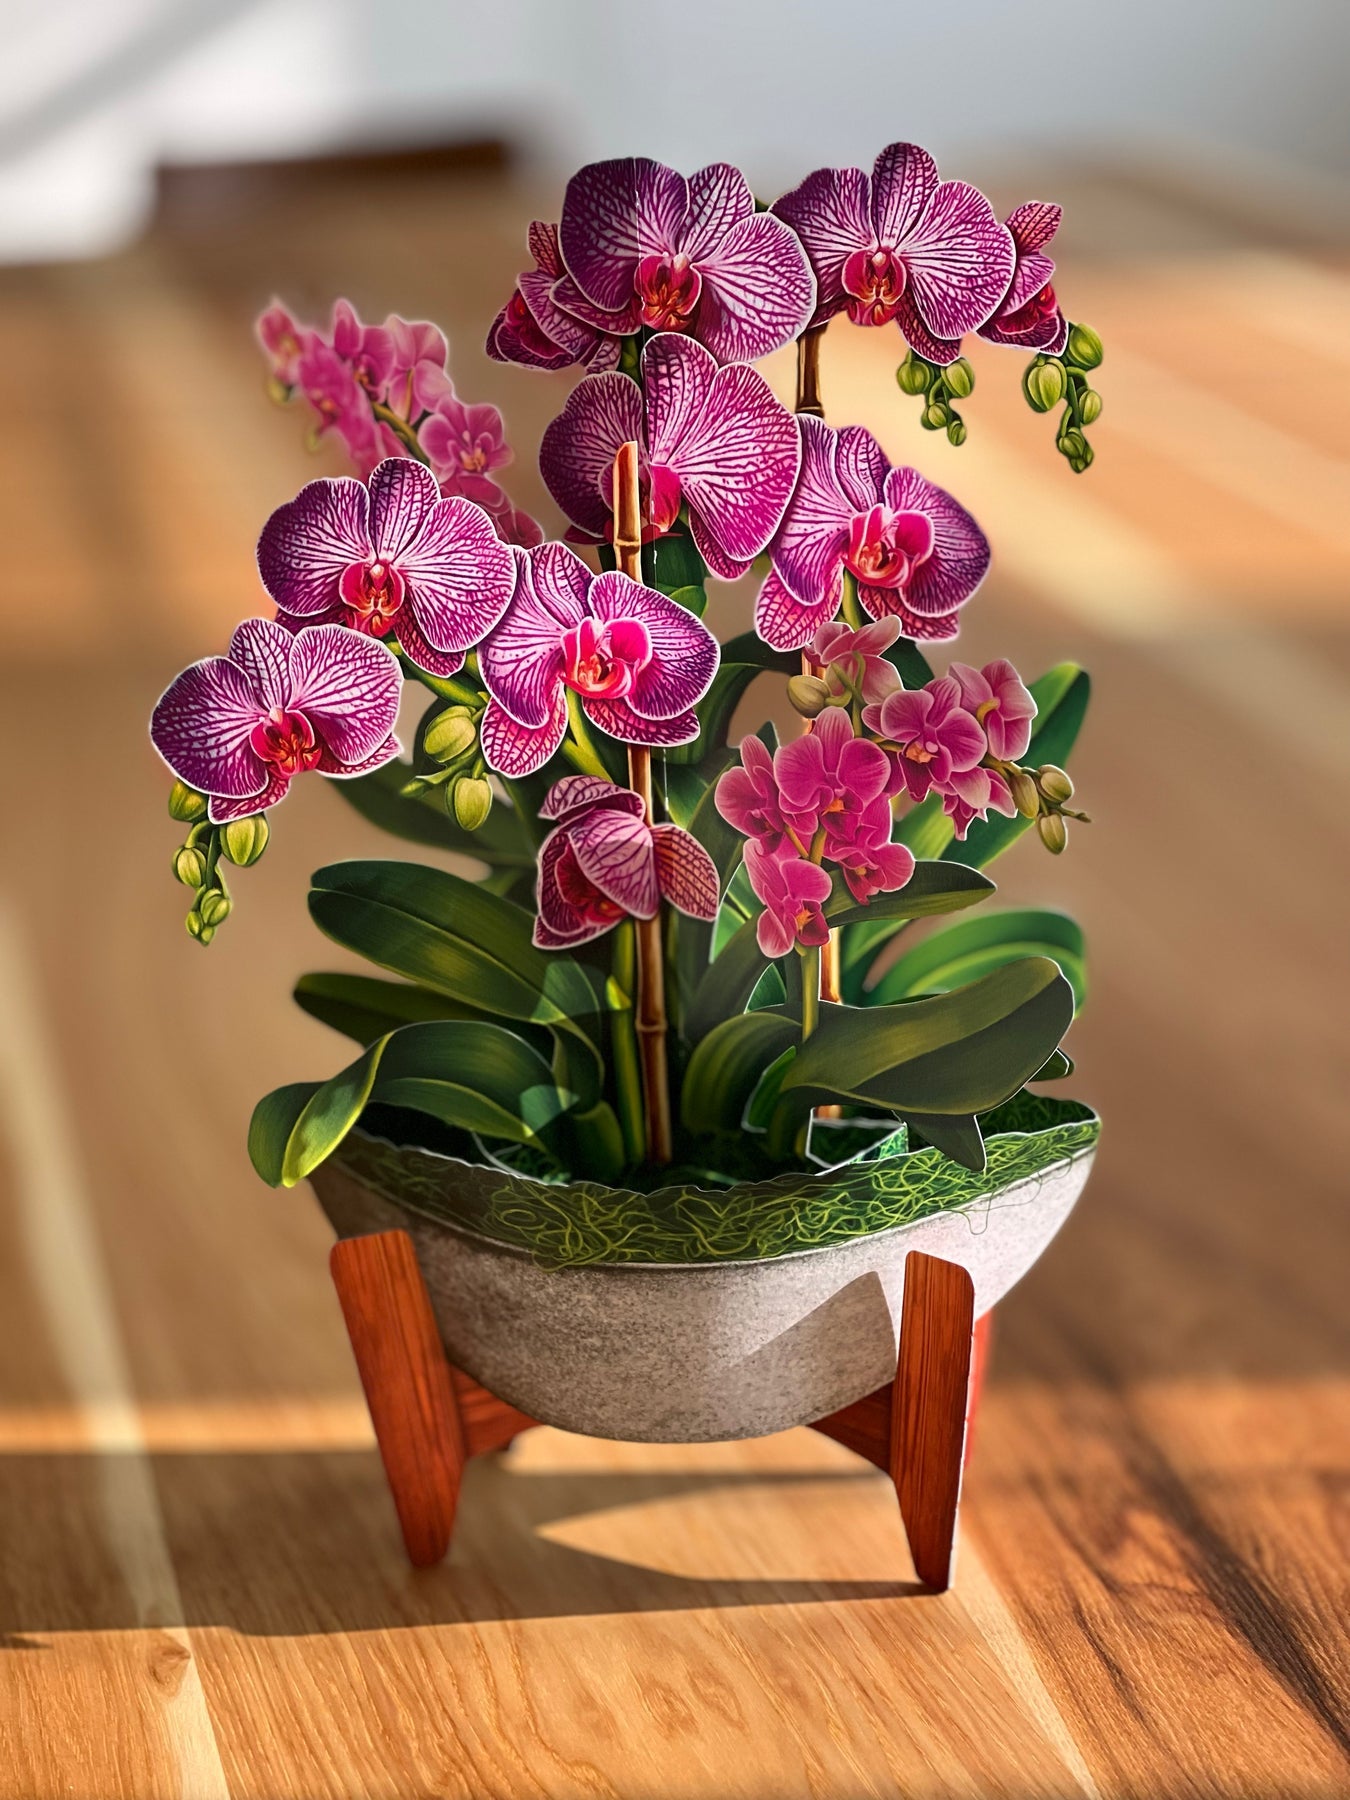 Orchid Oasis 3D Pop Up Bouquet